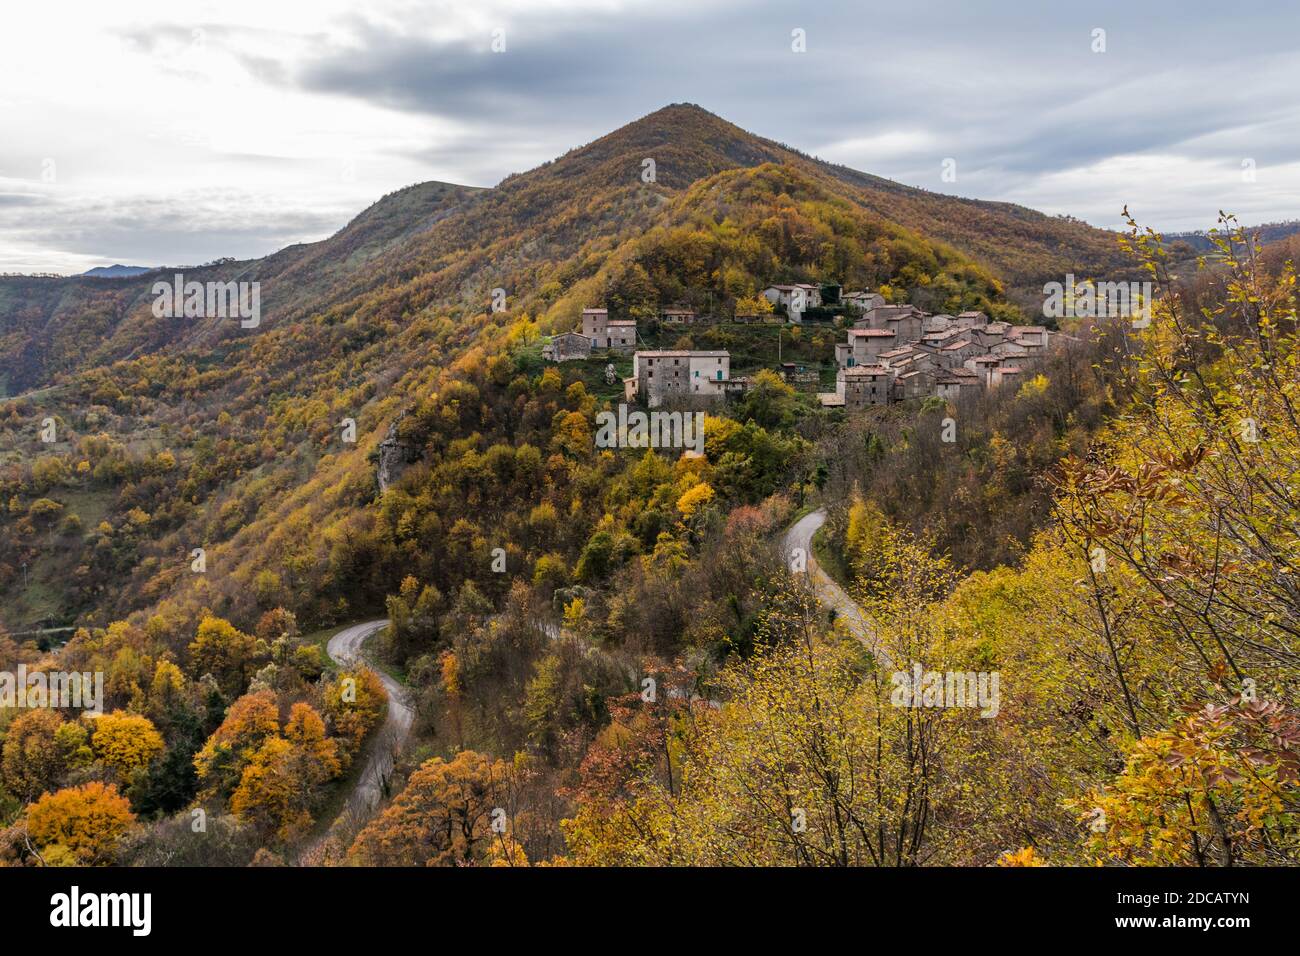 Le petit village rural de Pieia sur le flanc sud du mont Nerone (Marche, Italie) pendant l'automne Banque D'Images